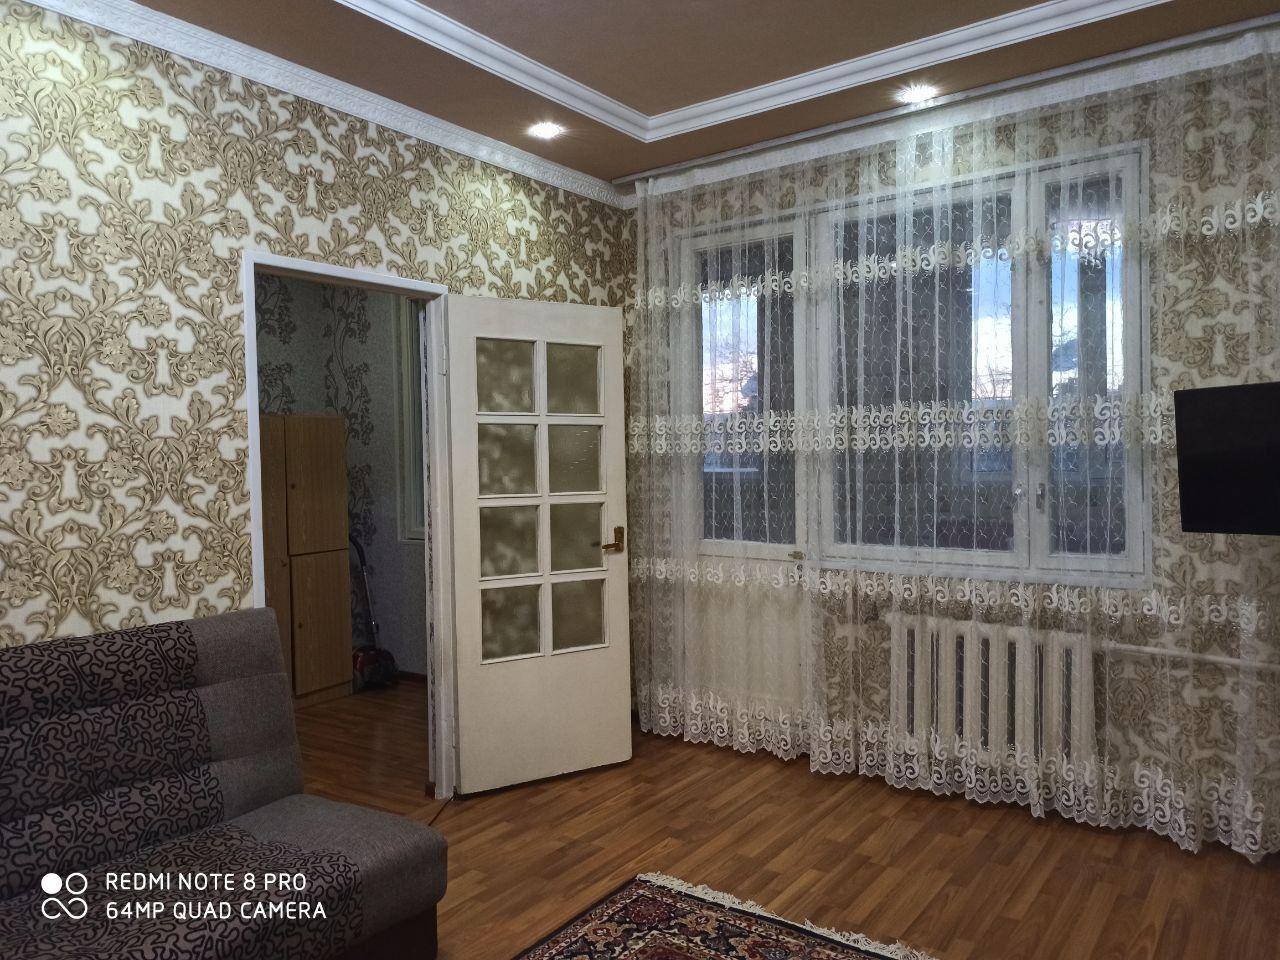 Квартира в Яшнабадском районе около базара Кадышева по отличной цене!